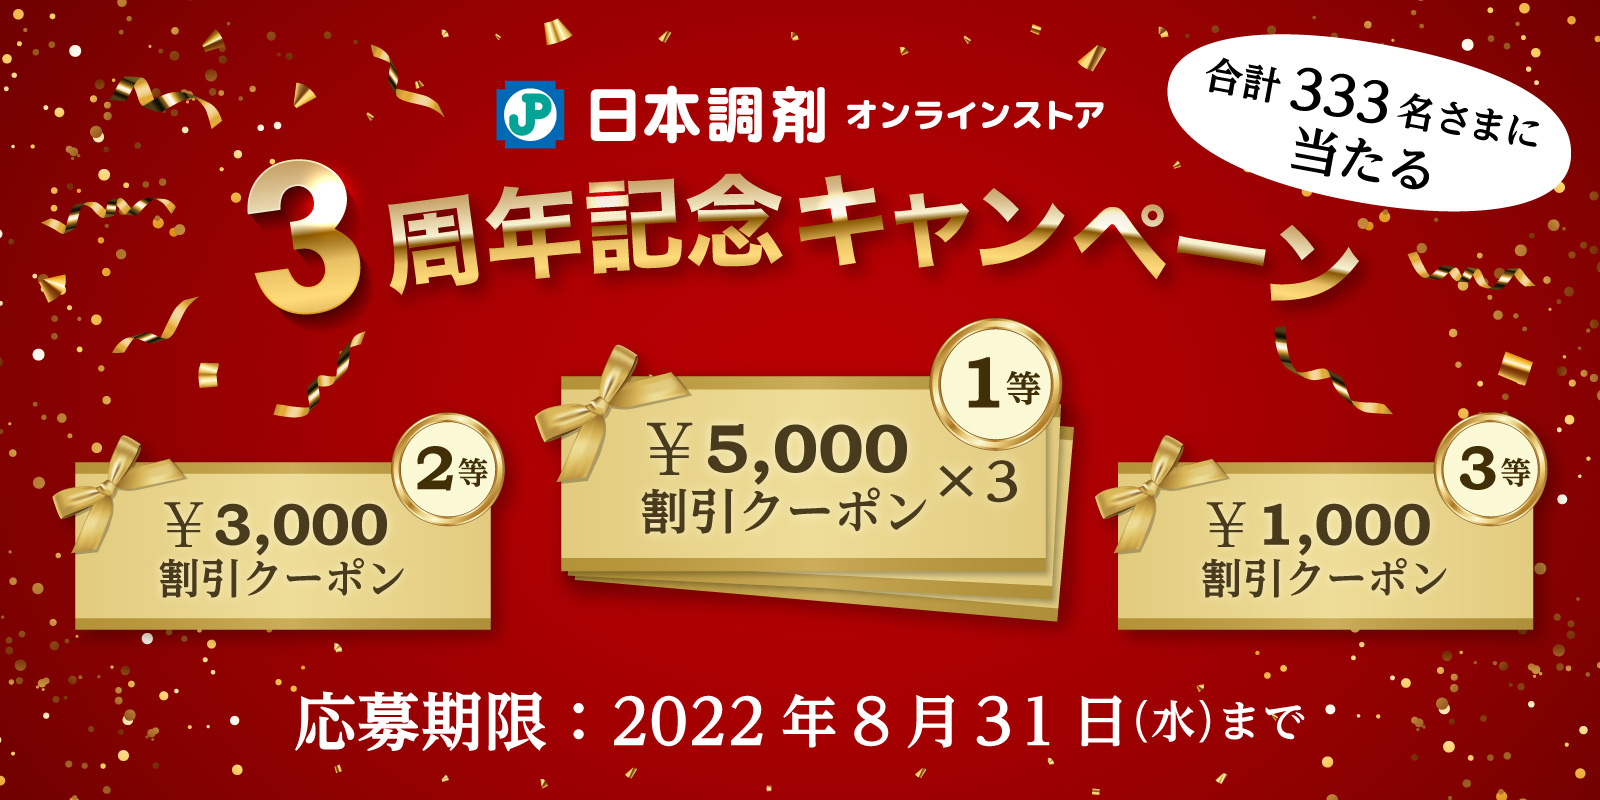 日本調剤オンラインストア3周年記念キャンペーン